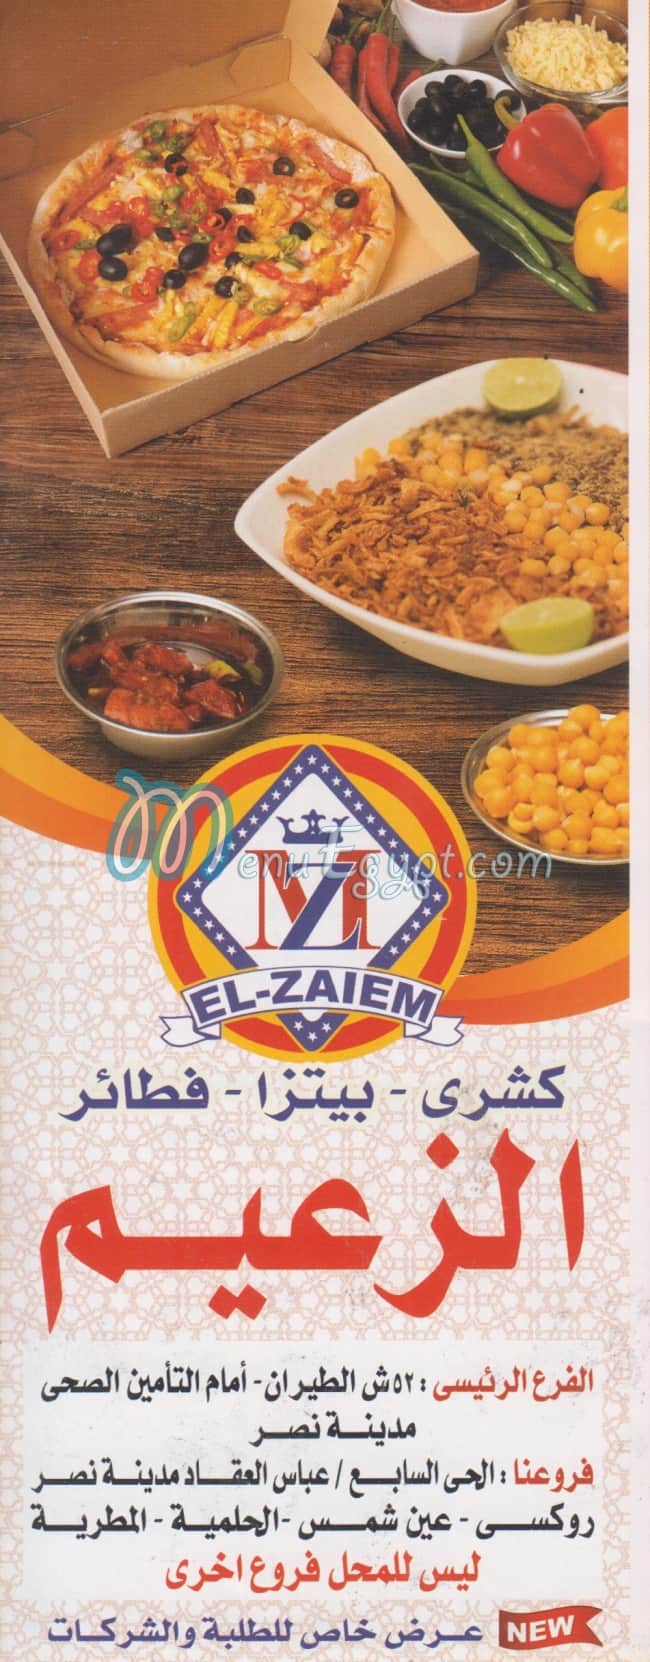 EL ZA3EEM menu